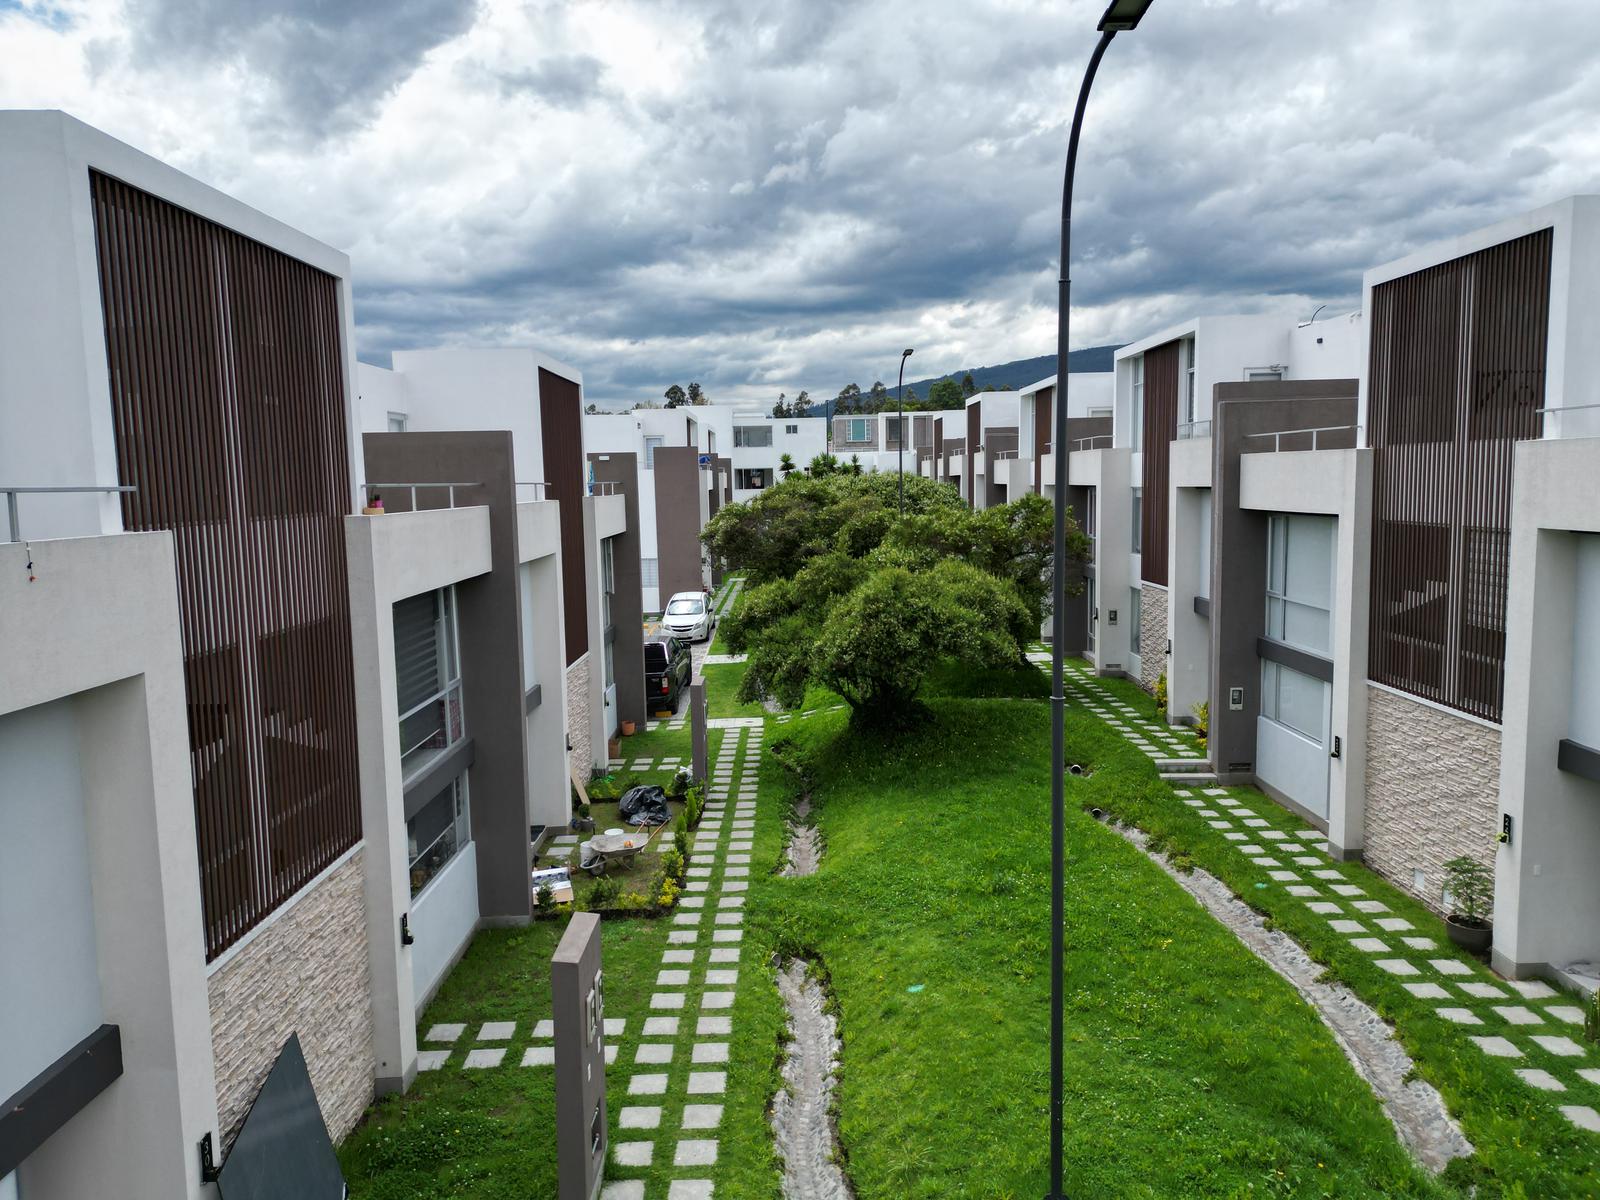 Casas VIP en Venta, de 2 y 3 habitaciones en Urbanización a 3 minutos del parque central de Conocoto